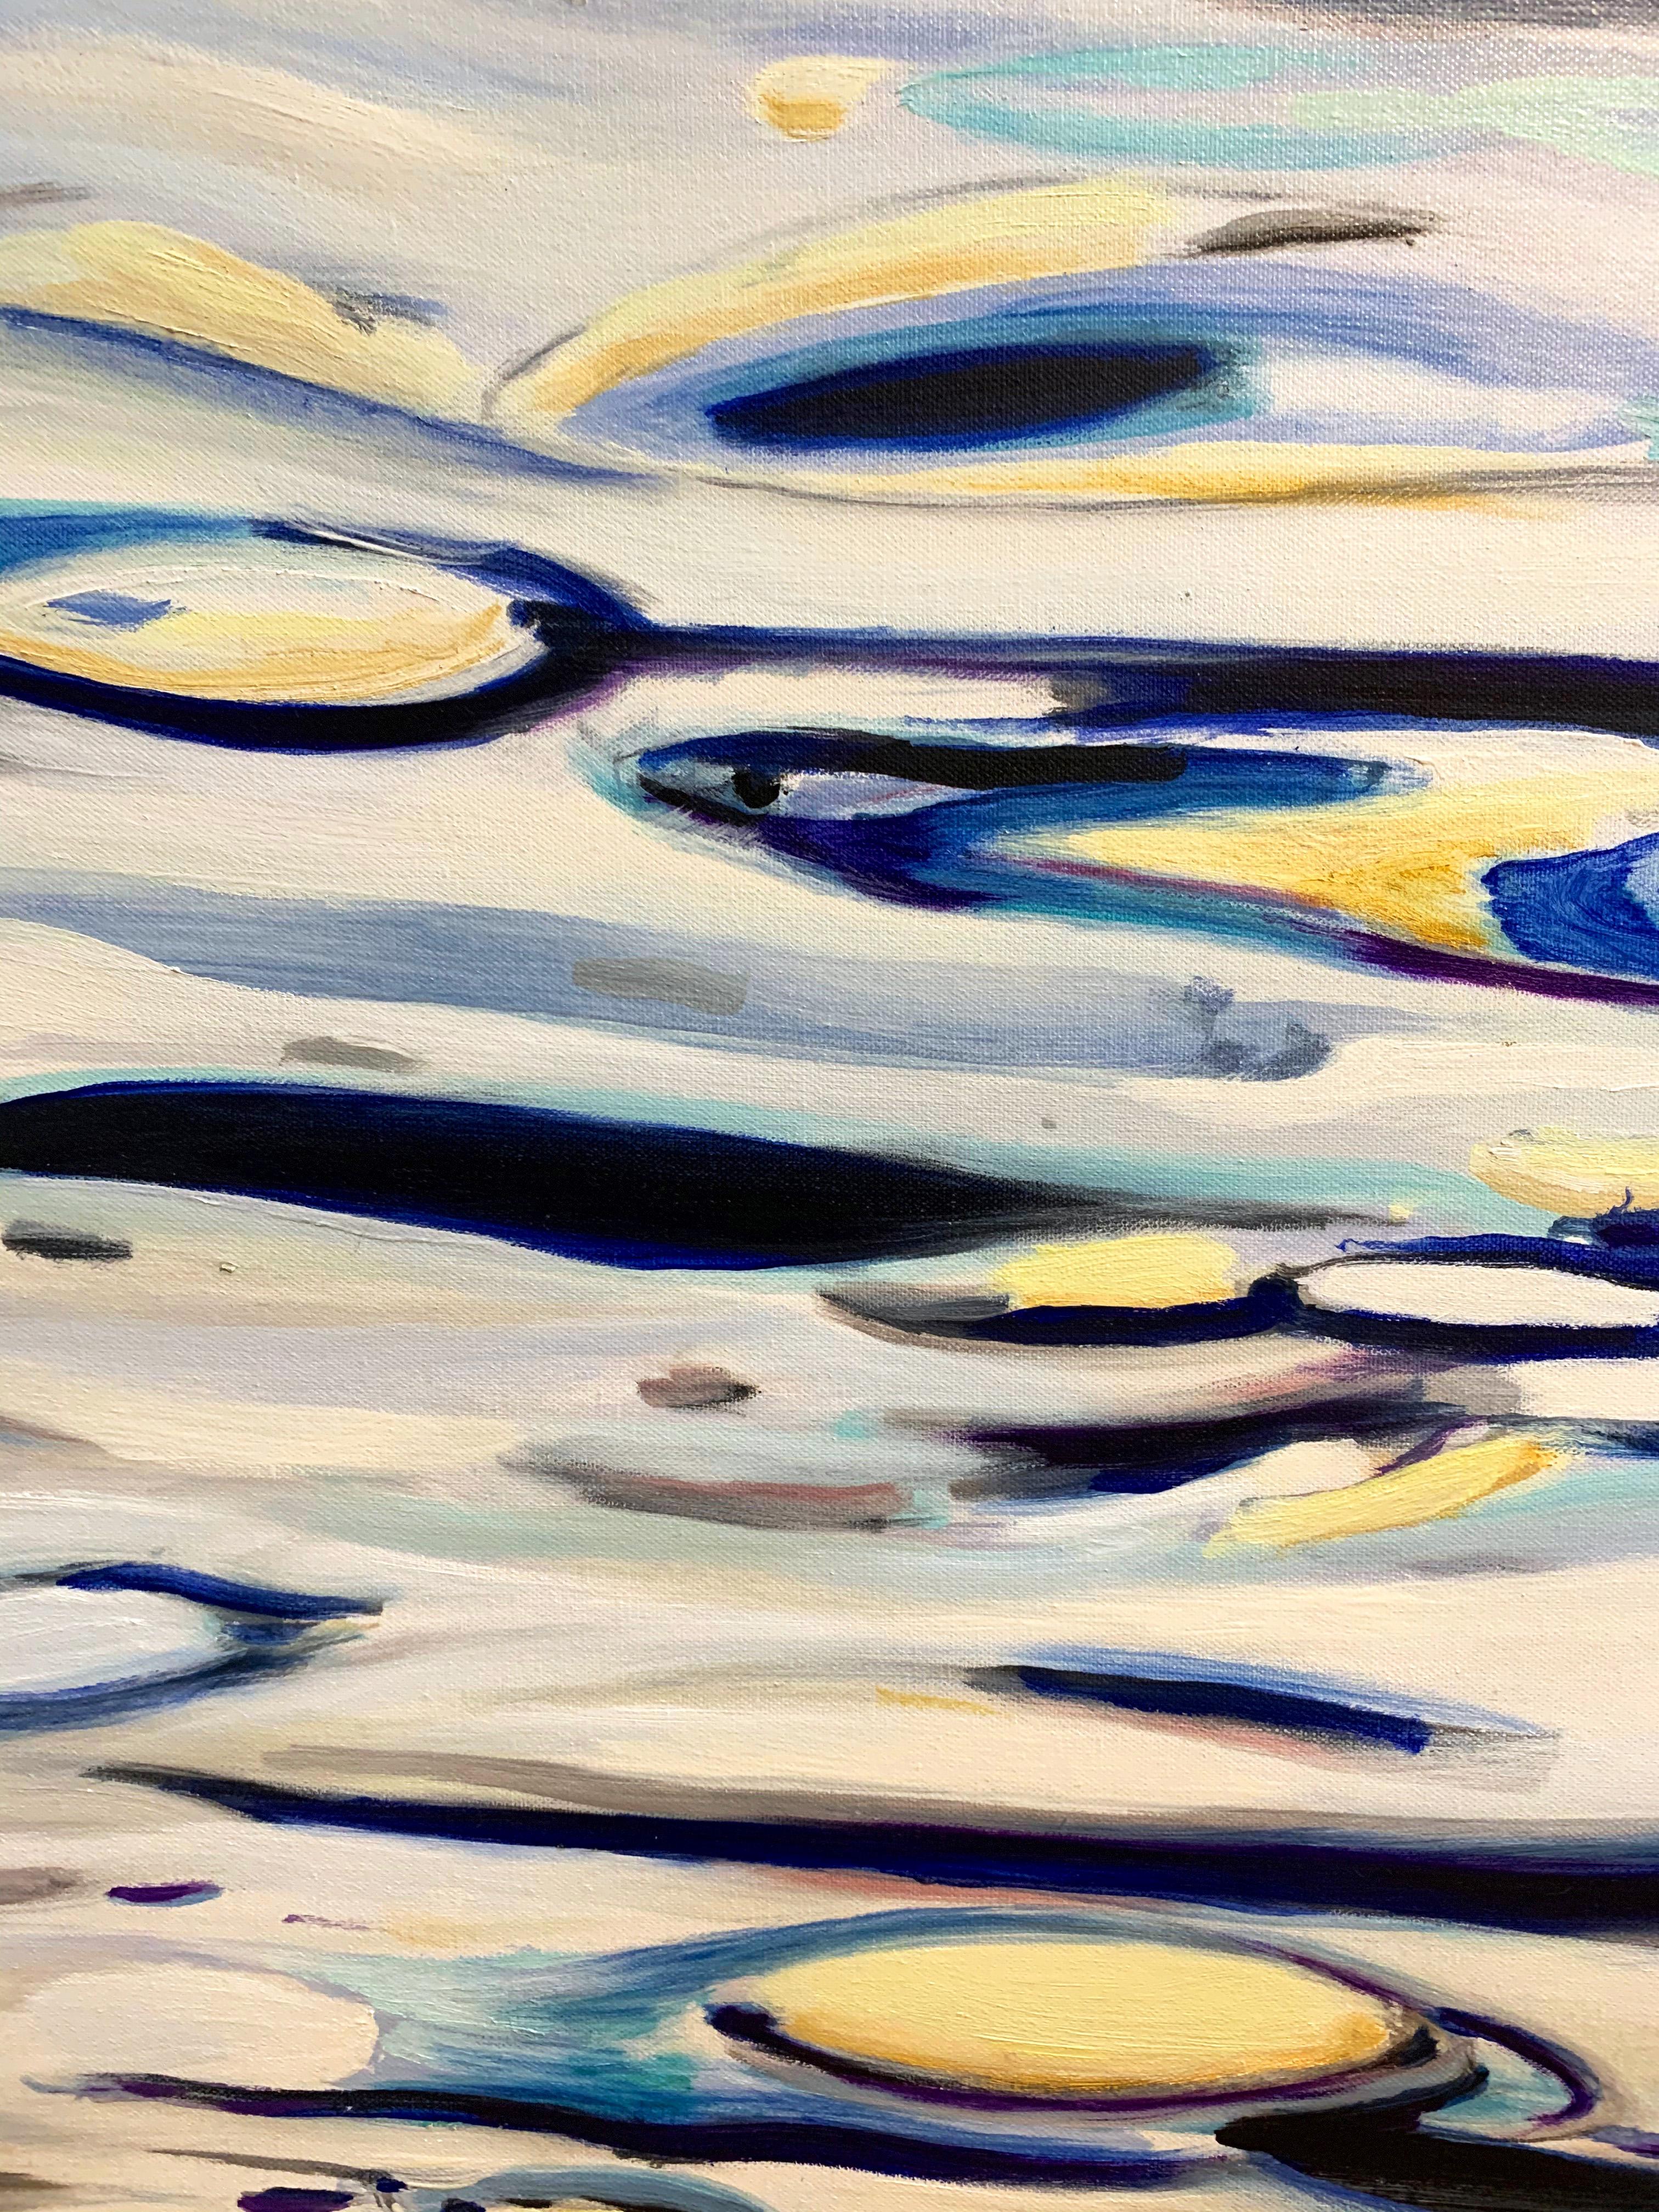 Miami River - blues, white, yellow  48 X 60 - Painting by Antonio Ugarte